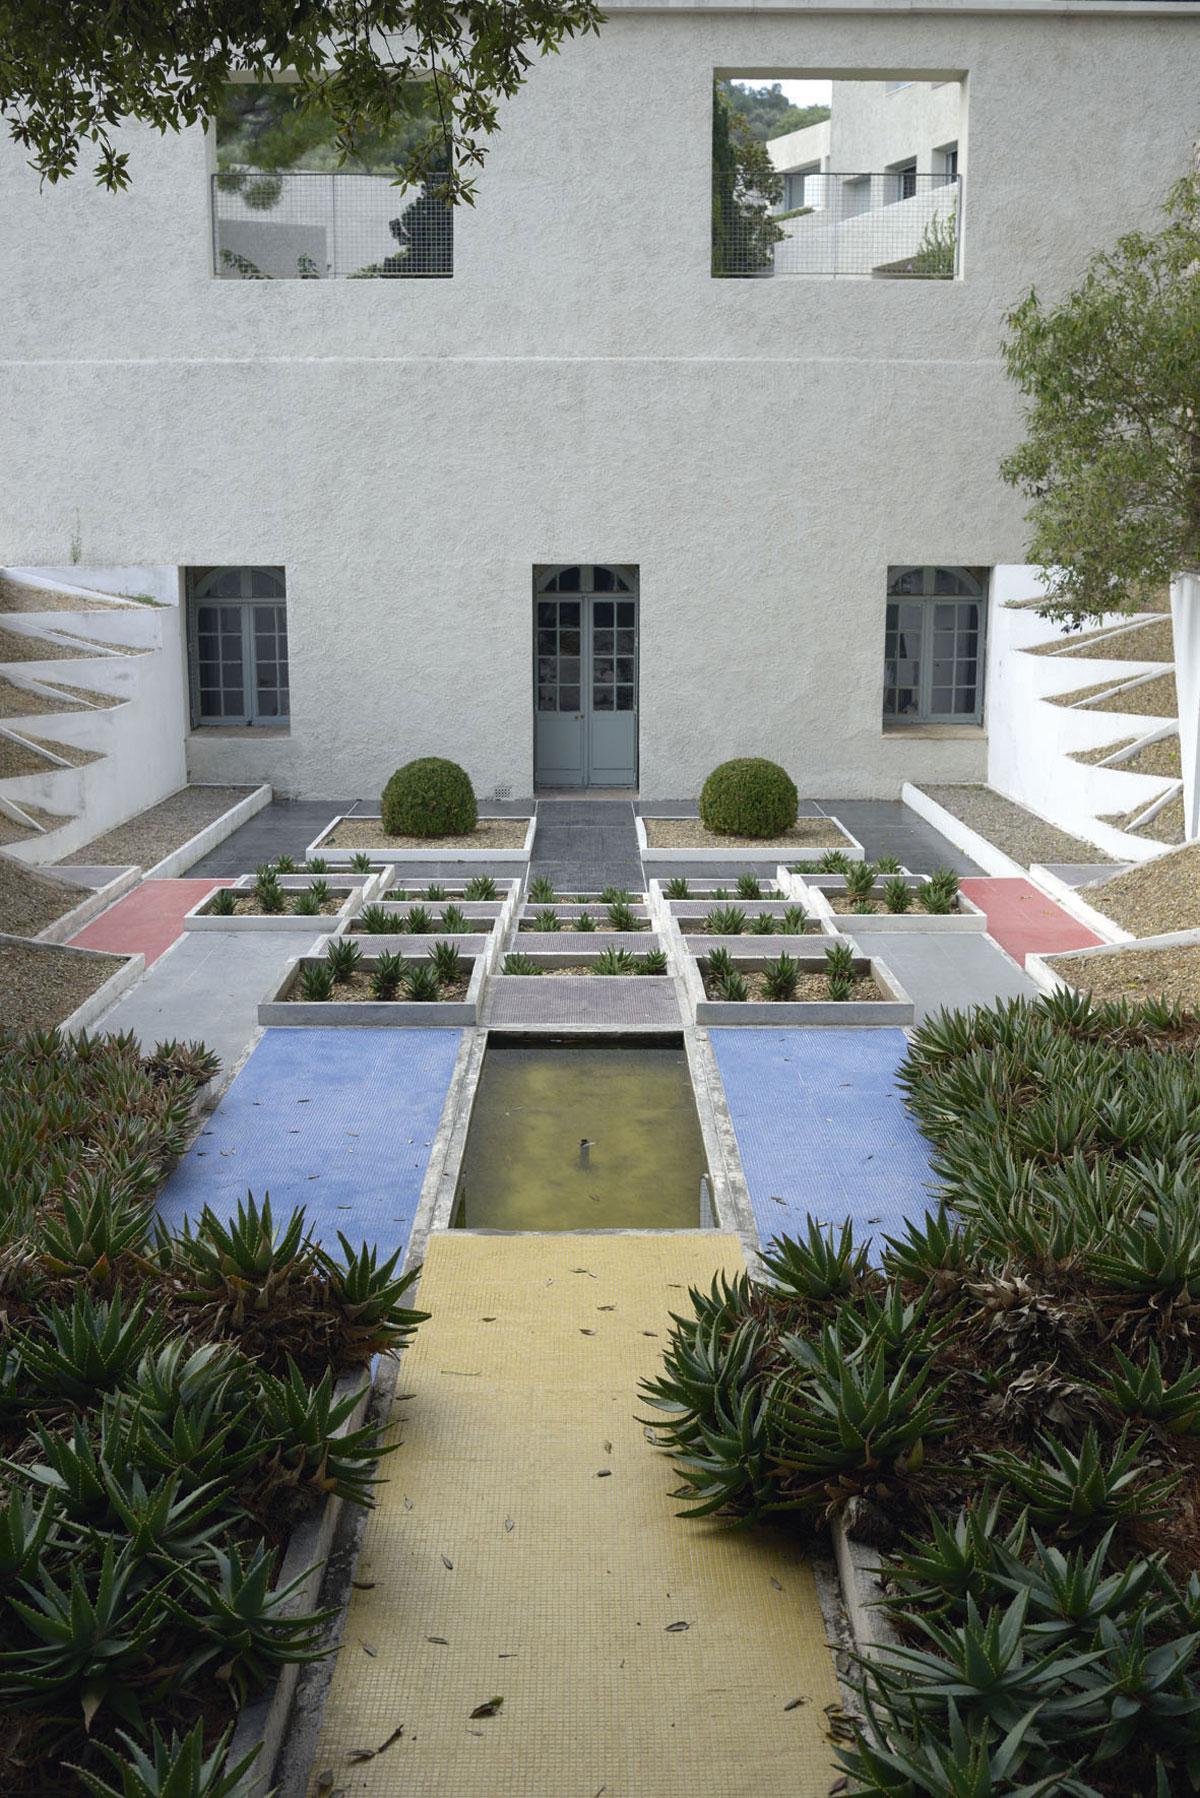 De kubistische tuin bestaat uit een dambord van getrapte vierkanten. De paden zijn bedekt met kleurrijke mozaïeken.